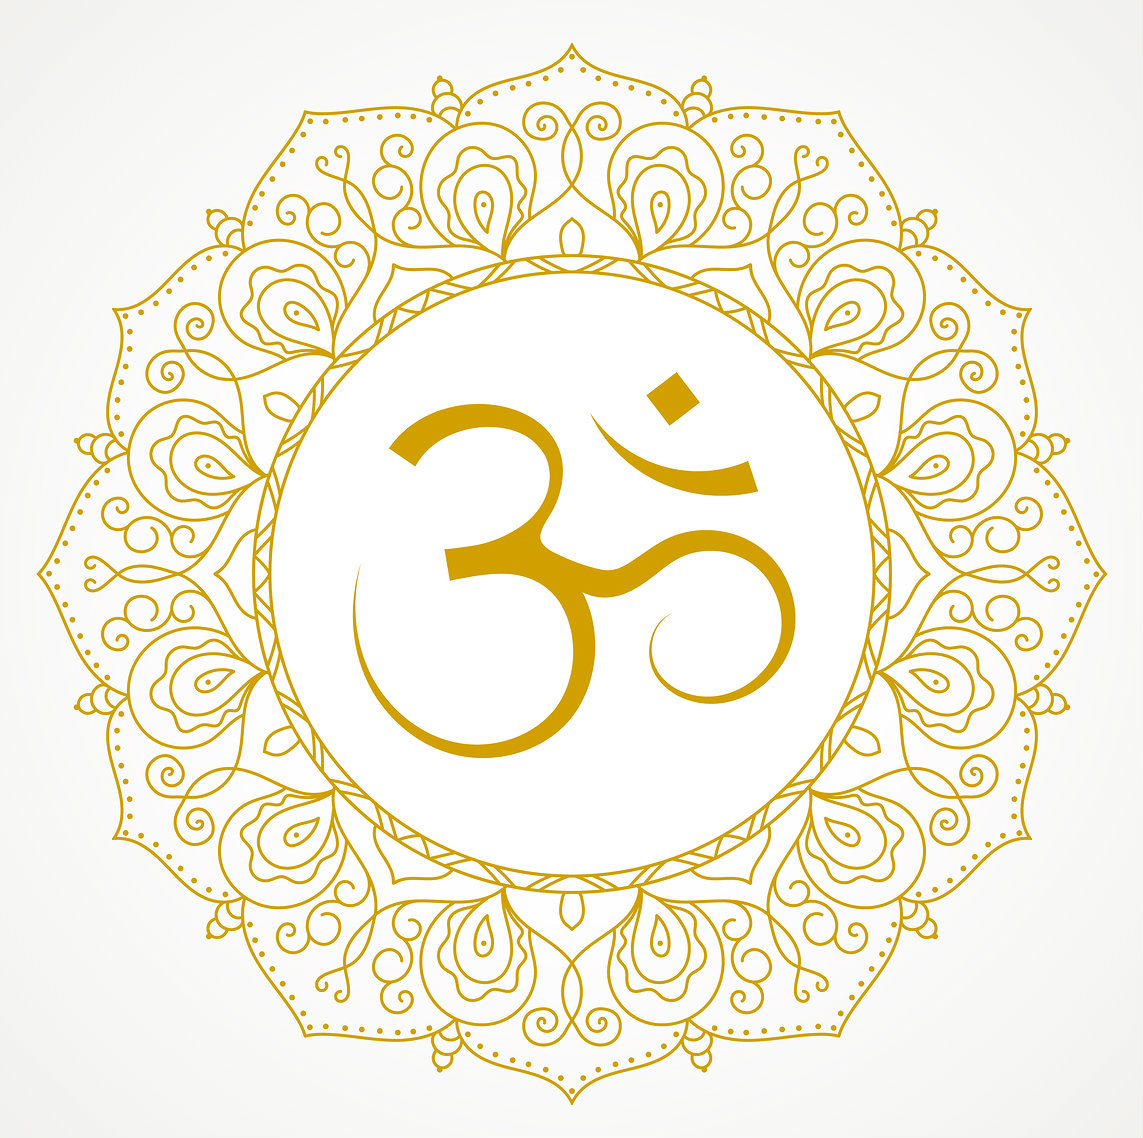 om_sacred_symbol_hinduism